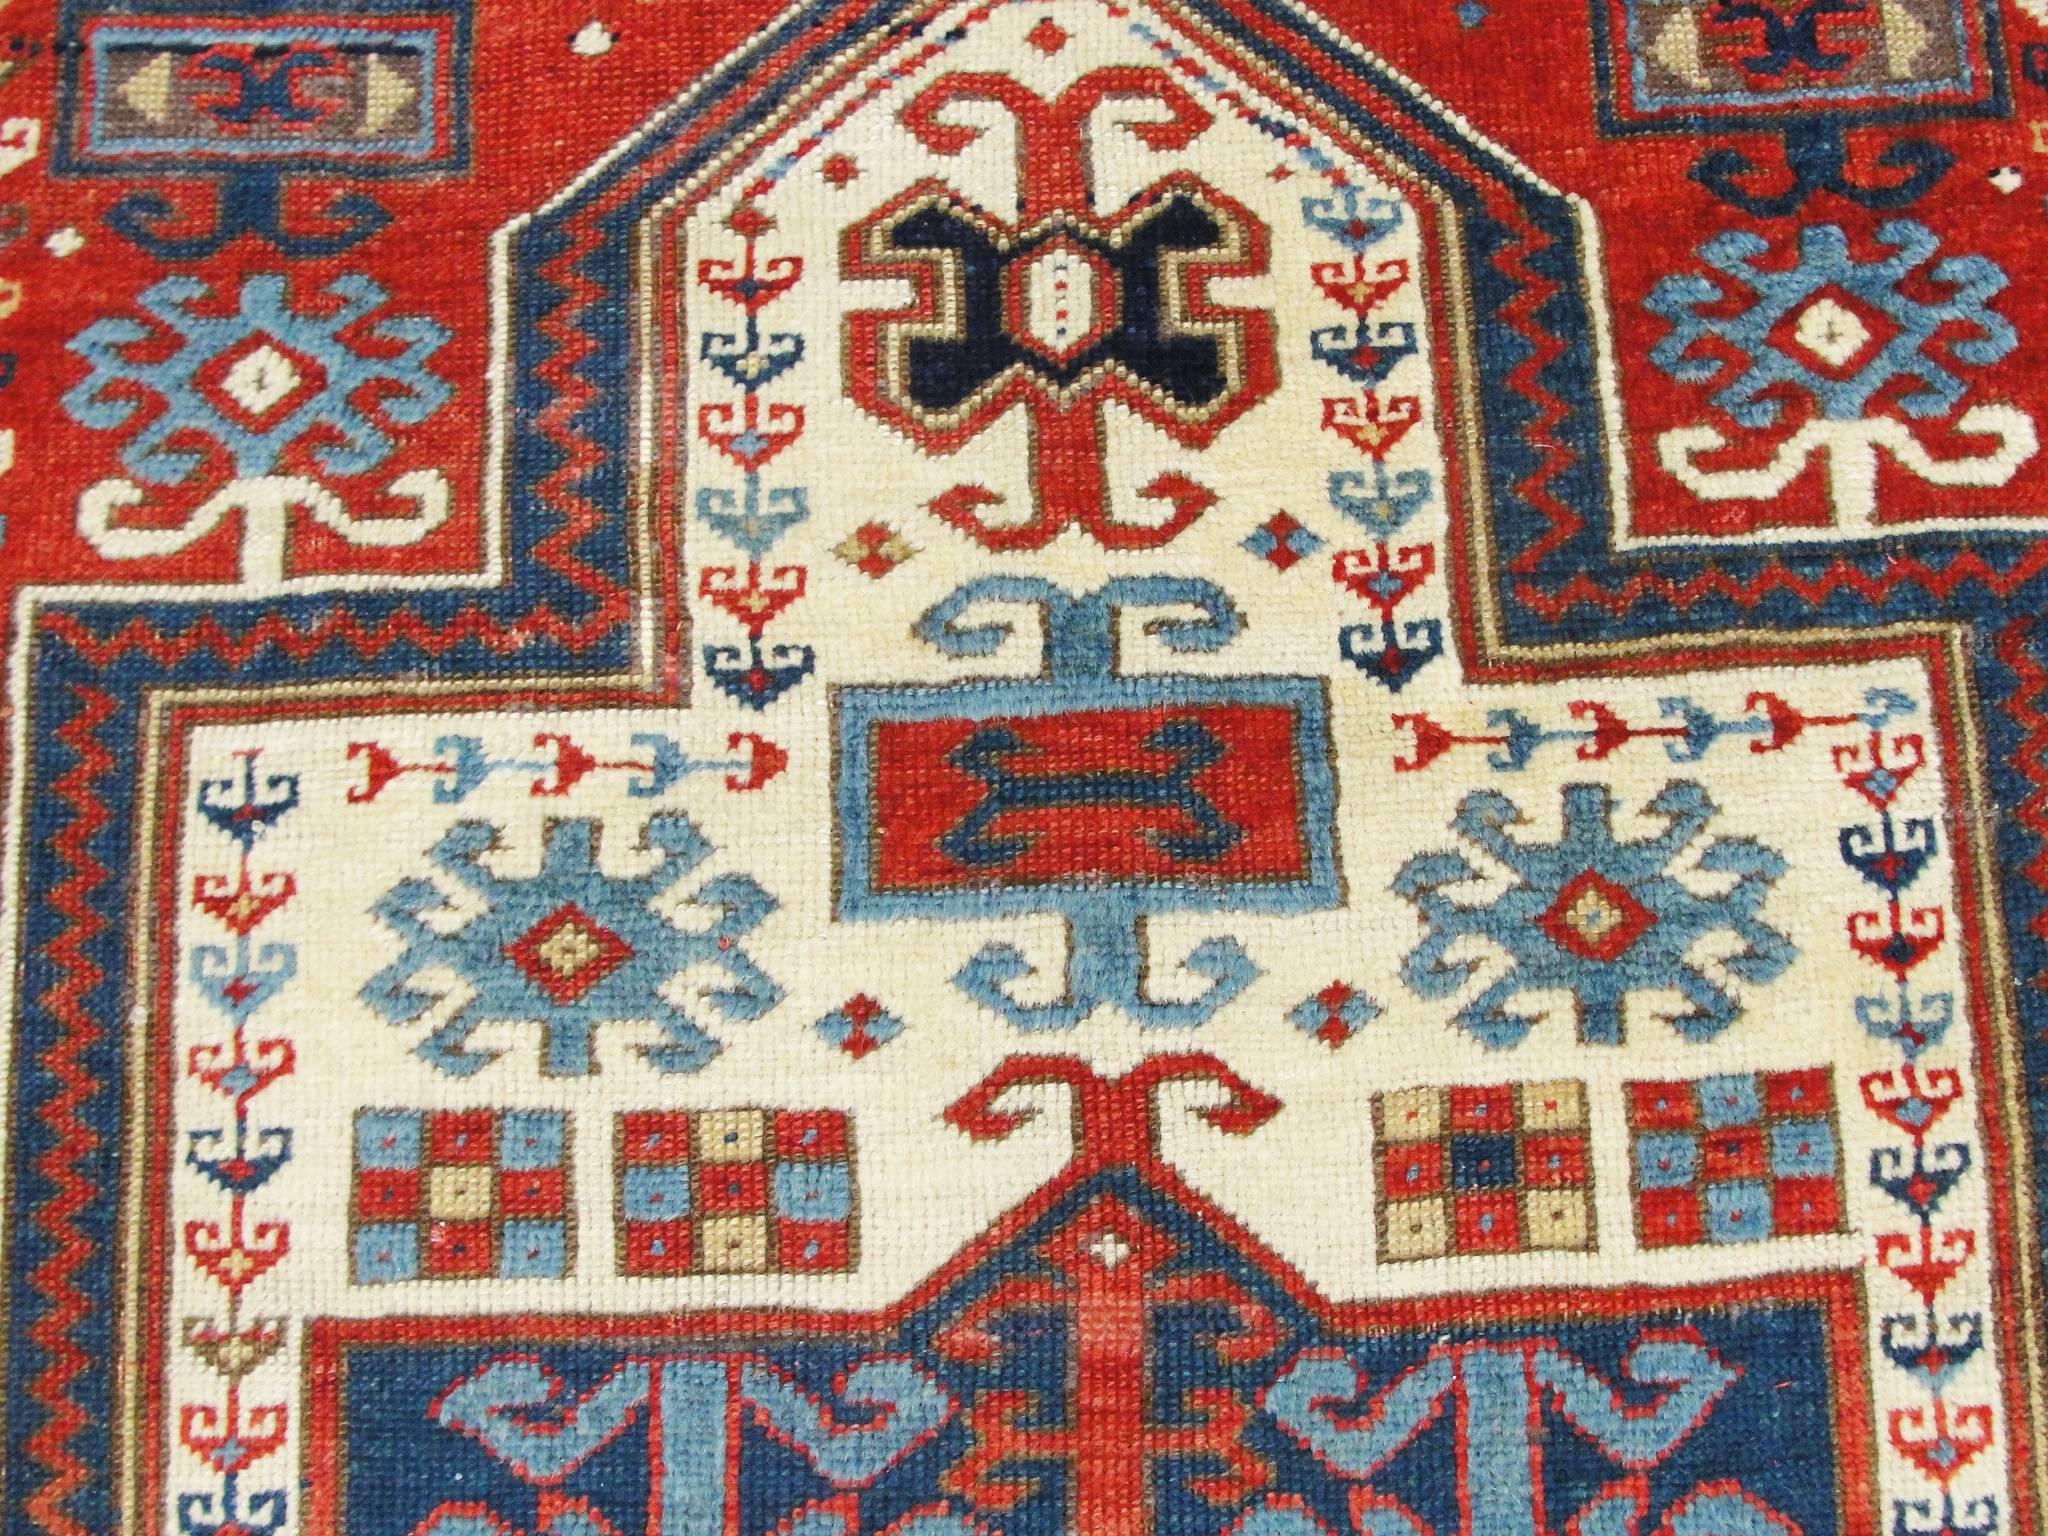 Late 19th Century Antique Caucasian Kazak Prayer Rug, 3'1